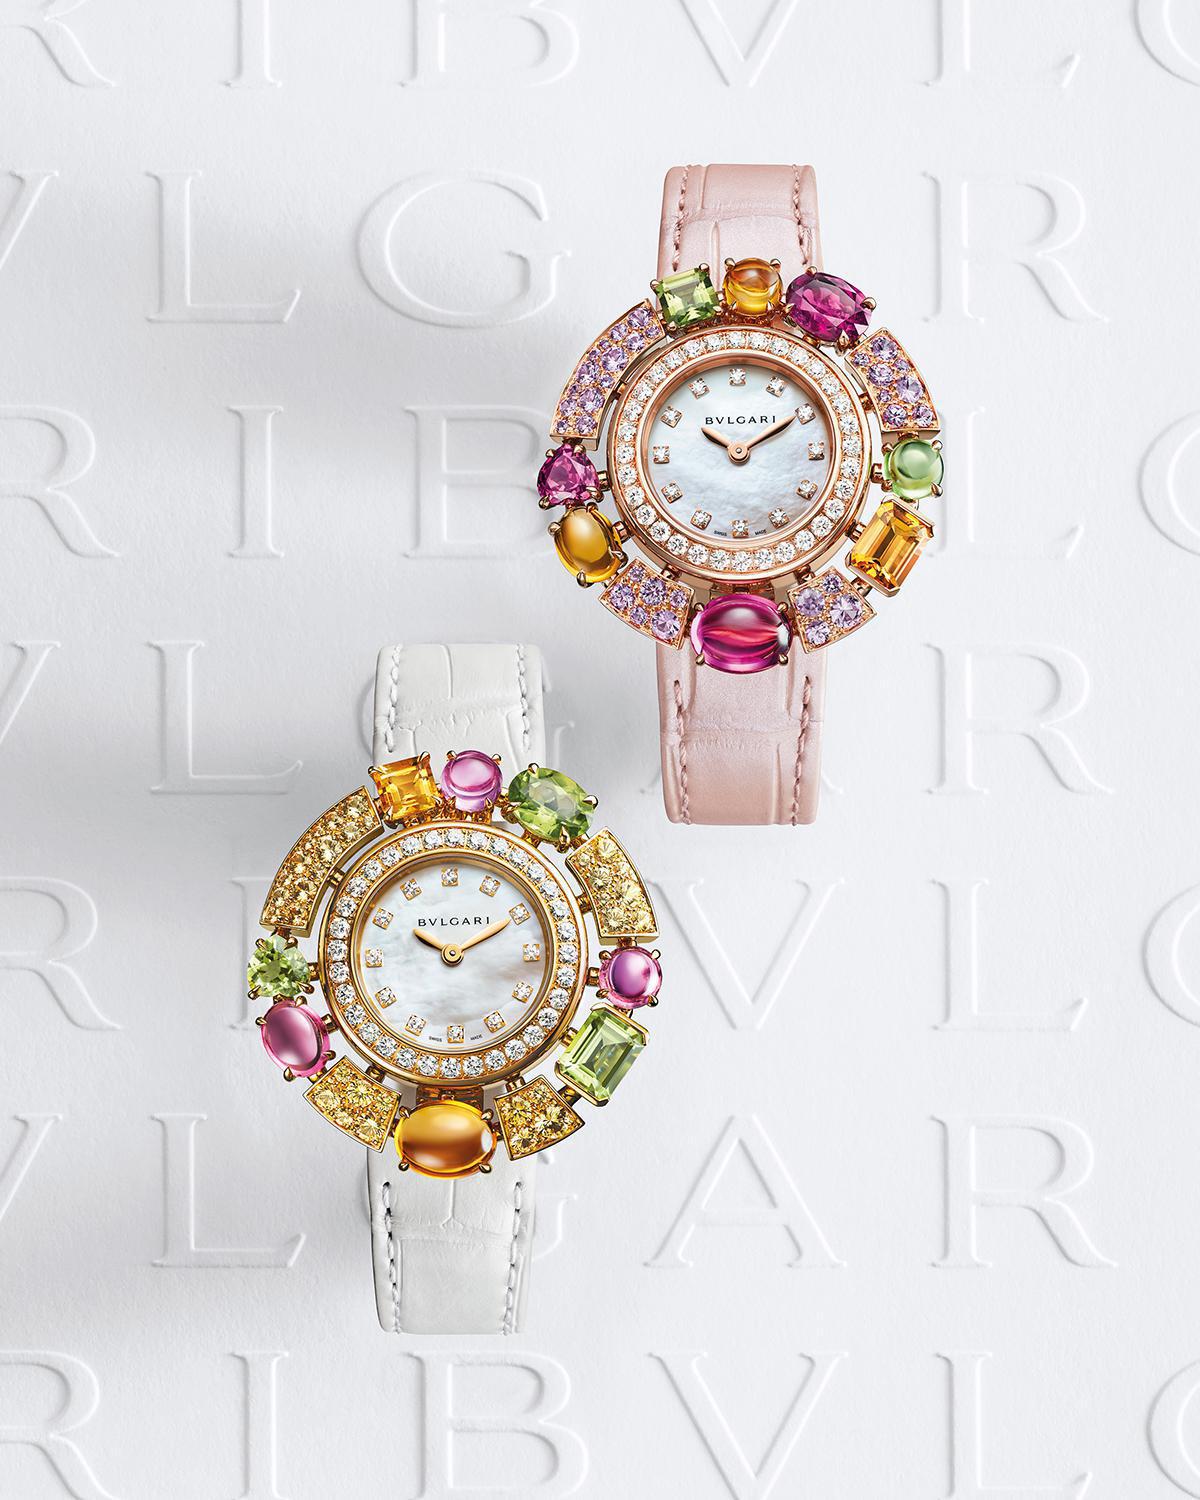 Сверху вниз: часы Allegra Pink Sapphires; часы Allegra Yellow Sapphires, коллекция Allegra, Bulgari